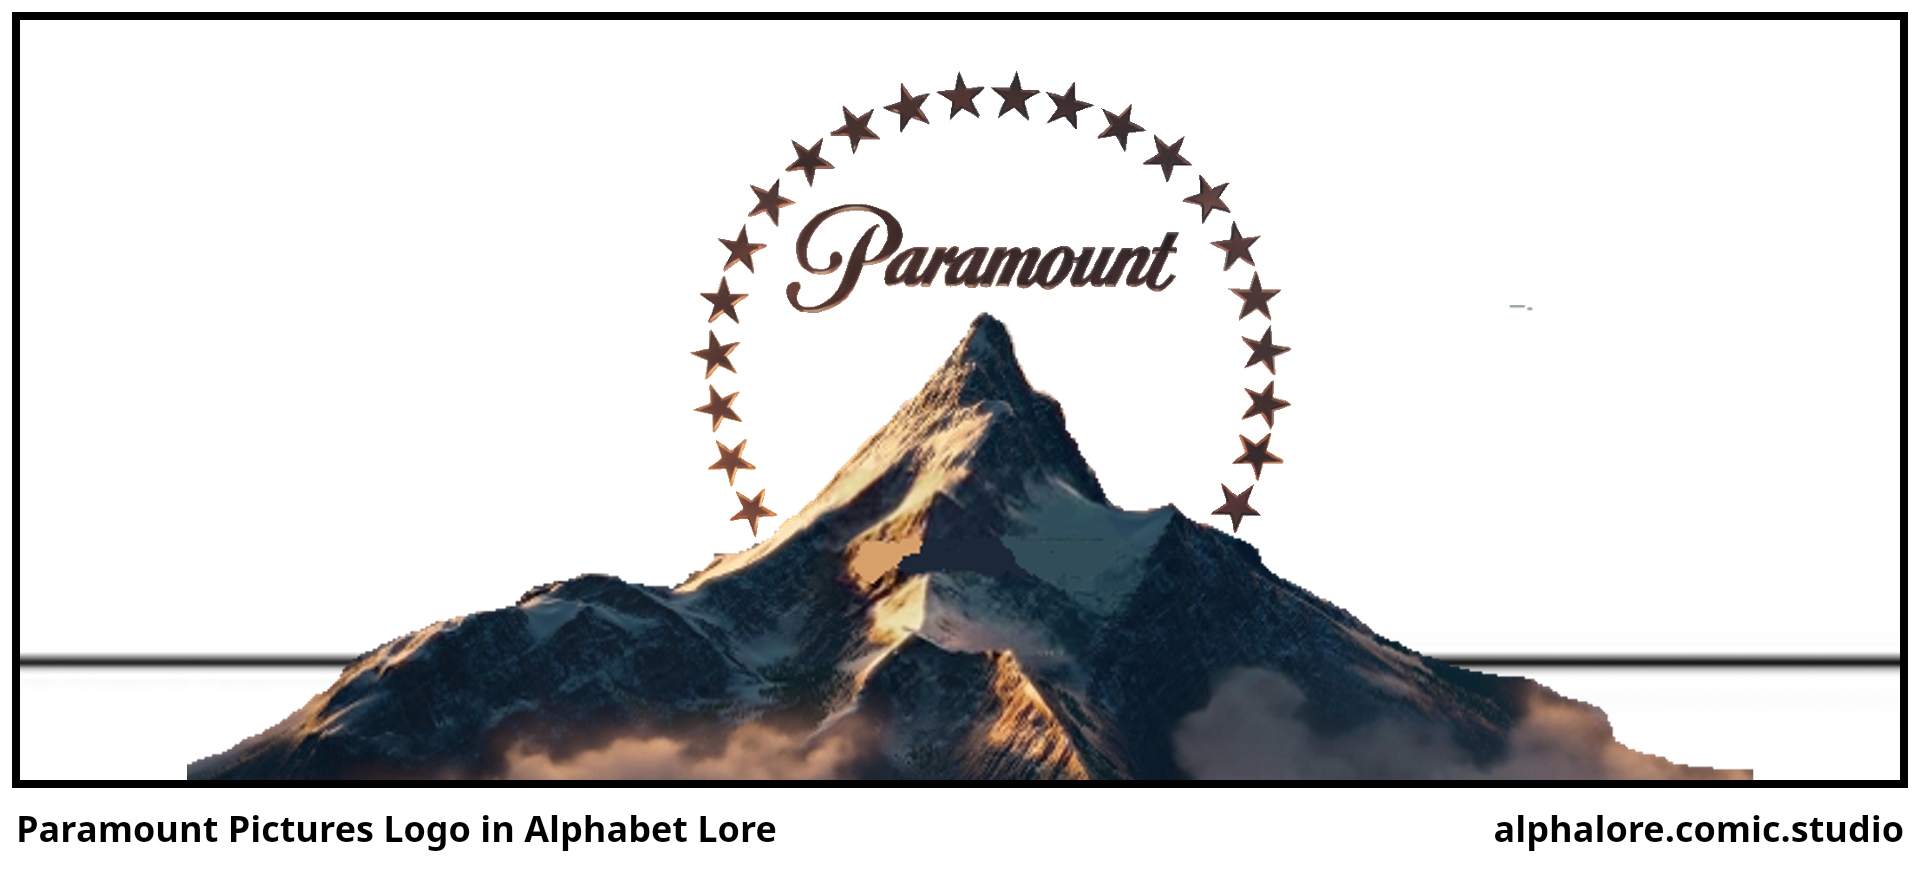 Paramount Pictures Logo in Alphabet Lore